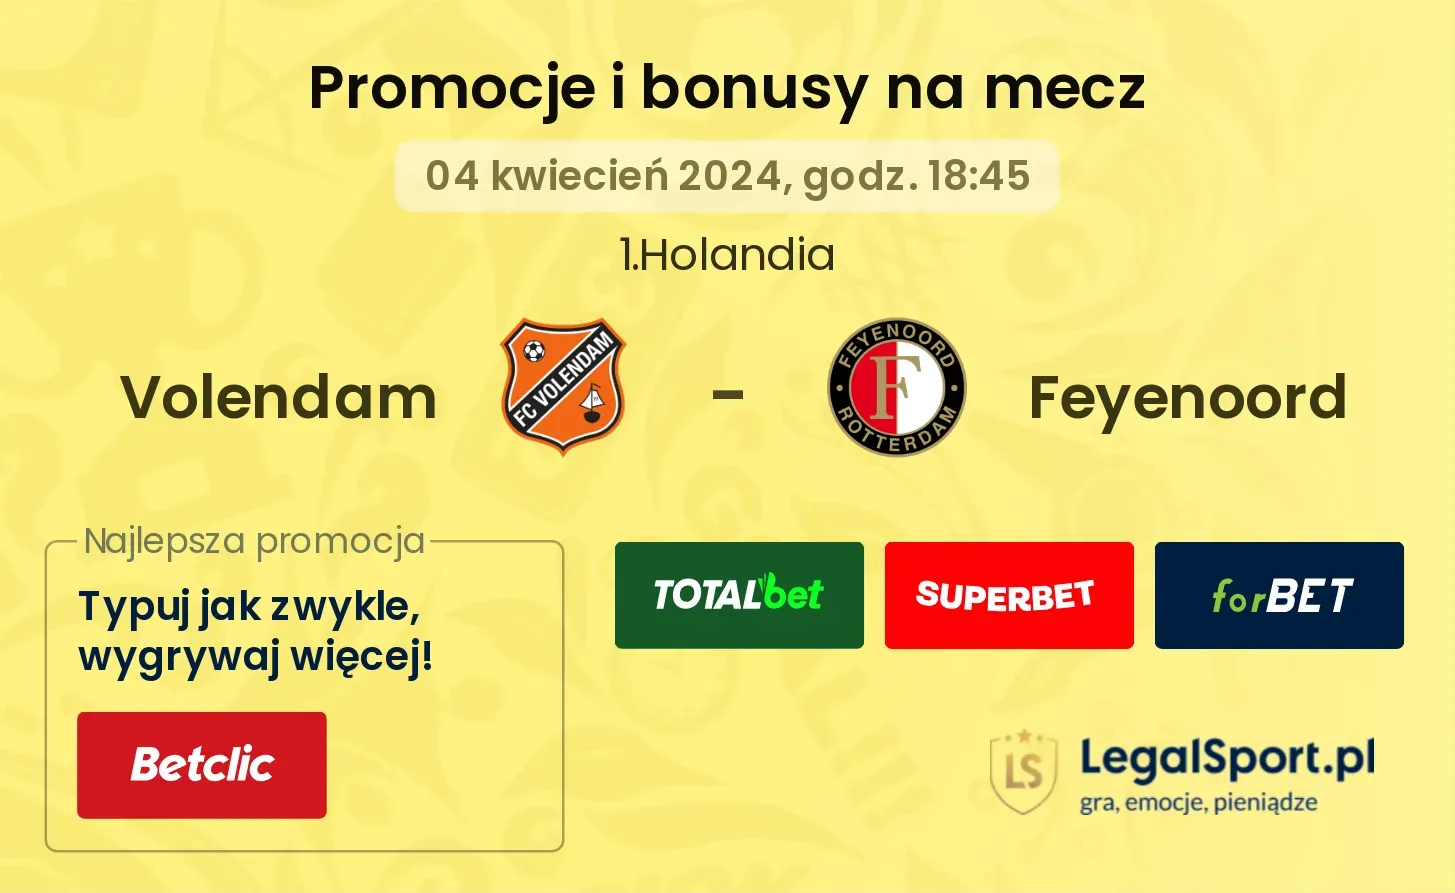 Volendam - Feyenoord promocje bonusy na mecz